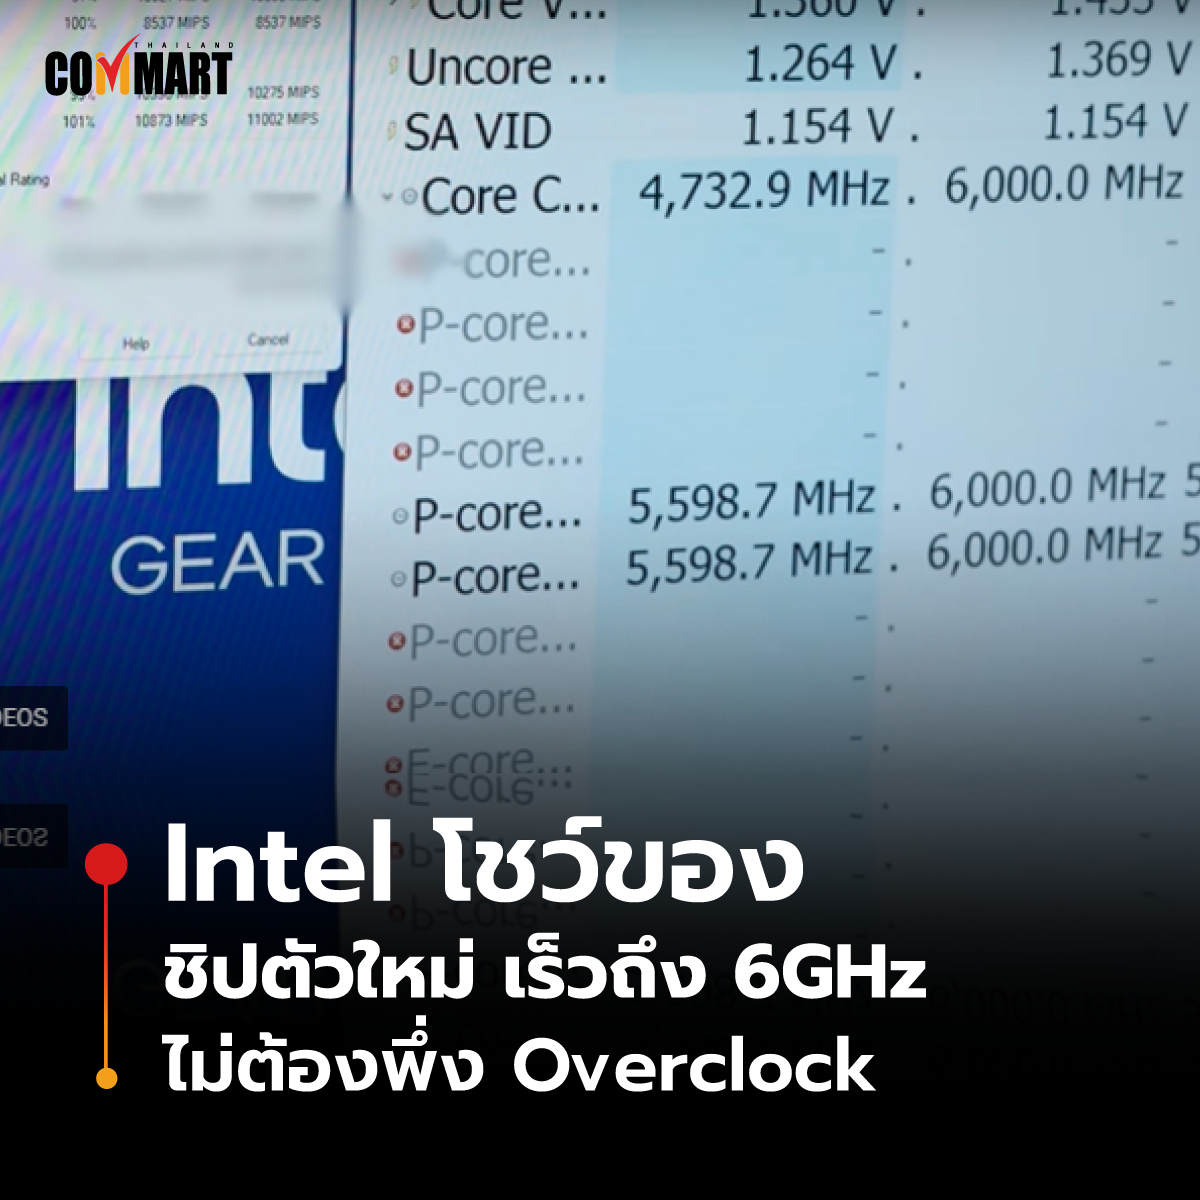 Intel โชว์ของ ชิปตัวใหม่ เร็วถึง 6GHz ไม่ต้องพึ่ง Overclock